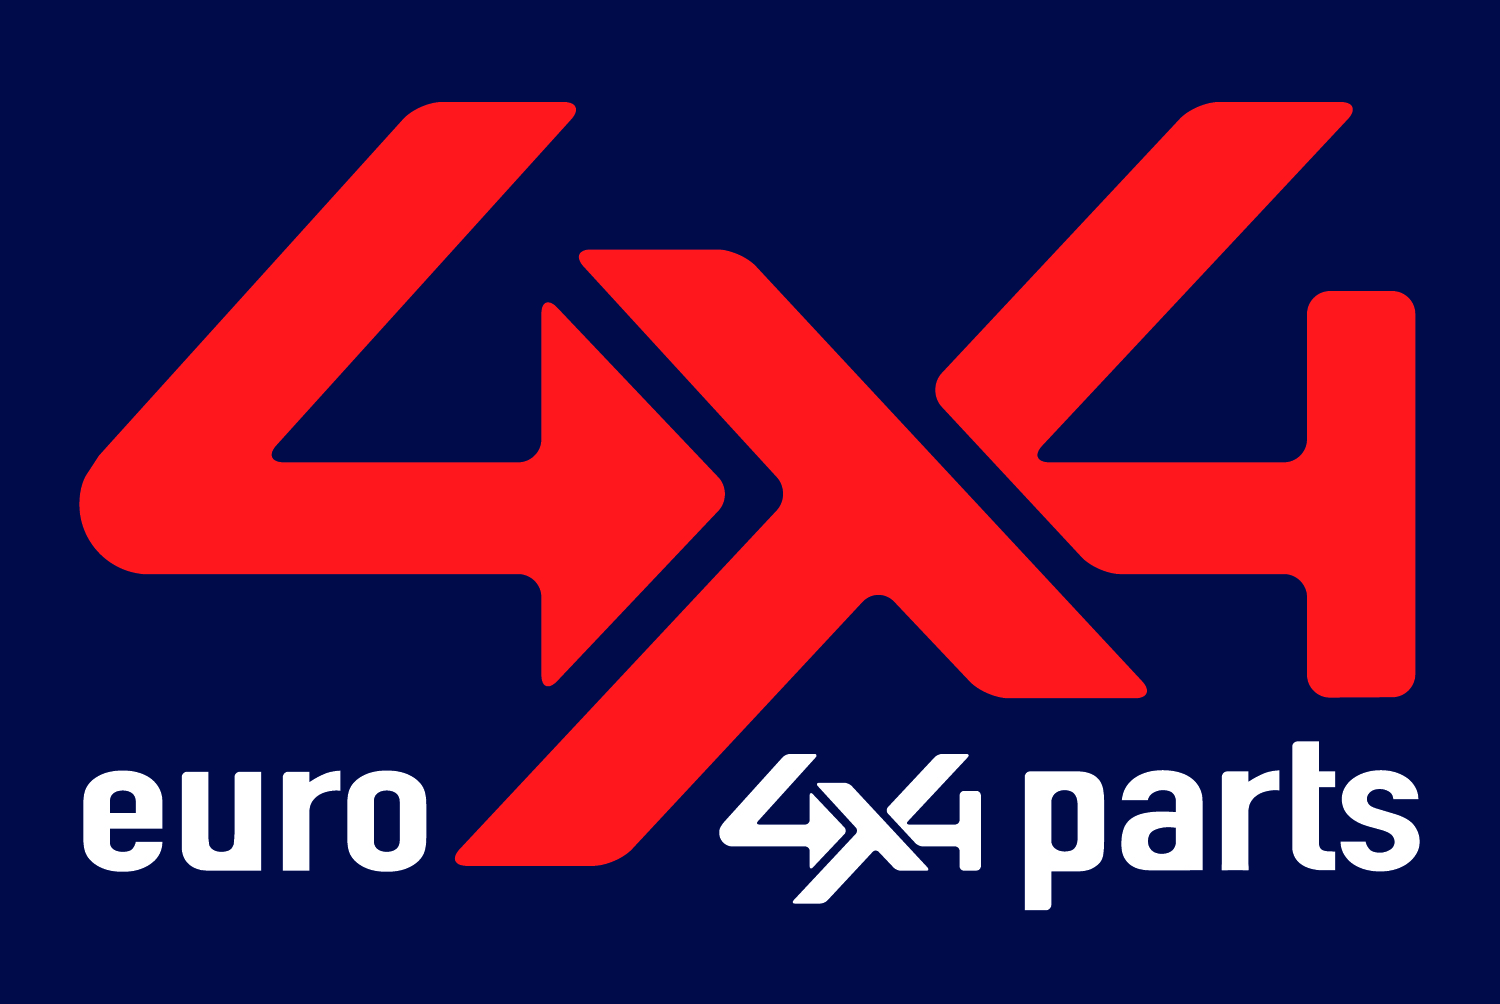 Notre partenaire Euro4x4parts